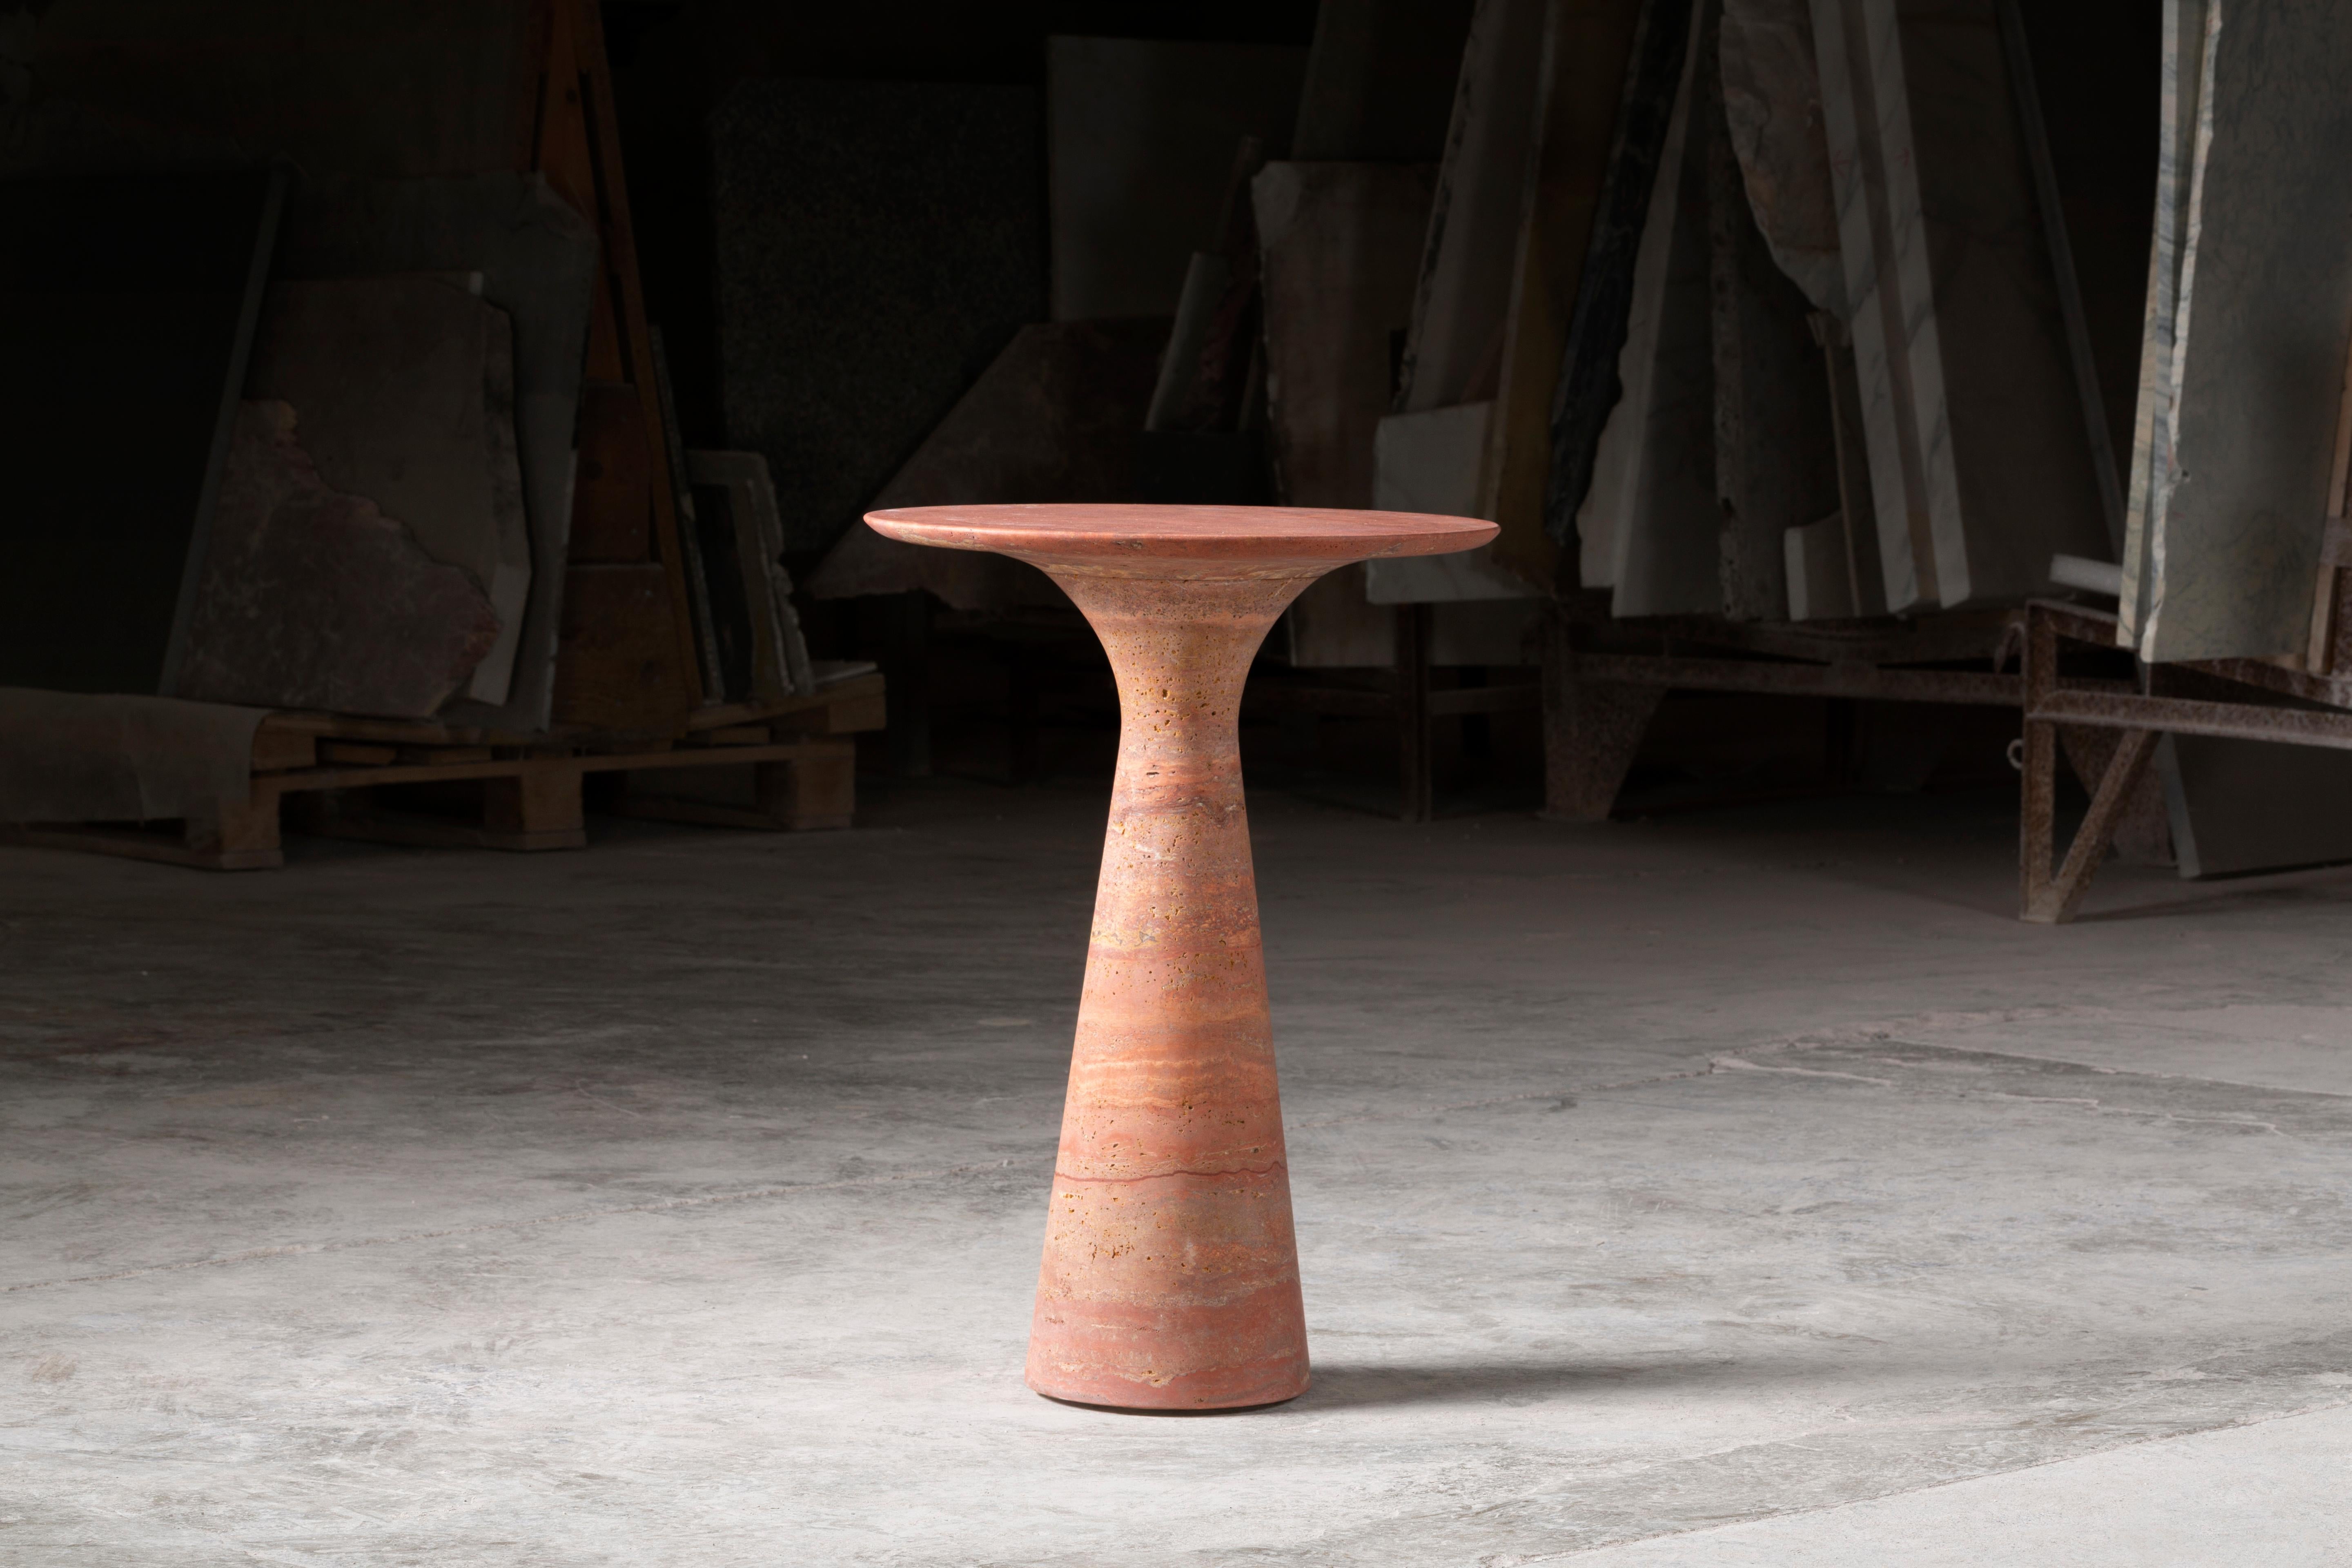 Table d'appoint en marbre contemporain raffiné Travertino Rosso 62/45
Dimensions : D 45 x H 62 cm
MATERIAL : Travertino rosso.

Angelo est l'essence même d'une table ronde en pierre naturelle, une forme sculpturale dans un matériau robuste aux